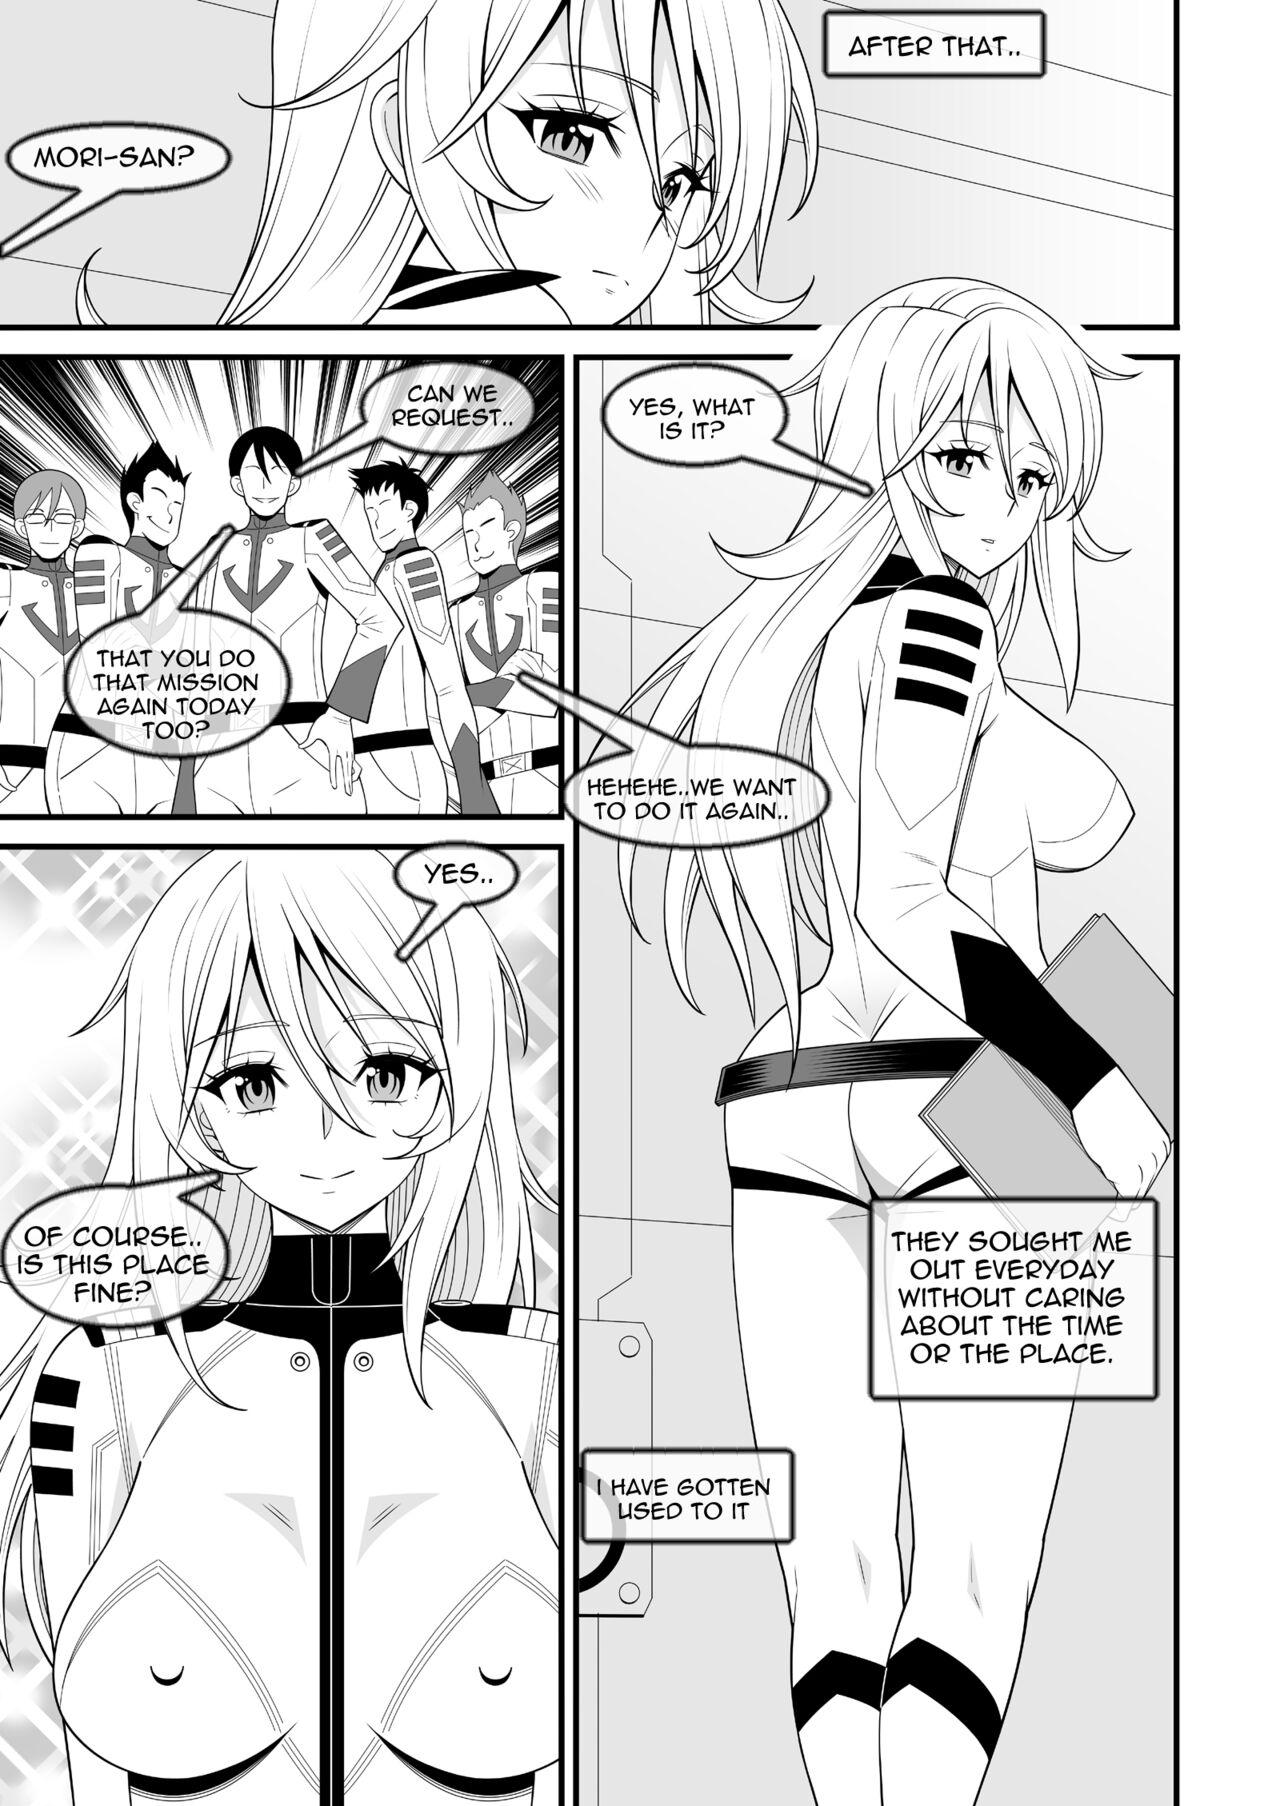 Pregnant Yamato Nadeshiko | Yamato's Beauty - Space battleship yamato 2199 Hotfuck - Page 12